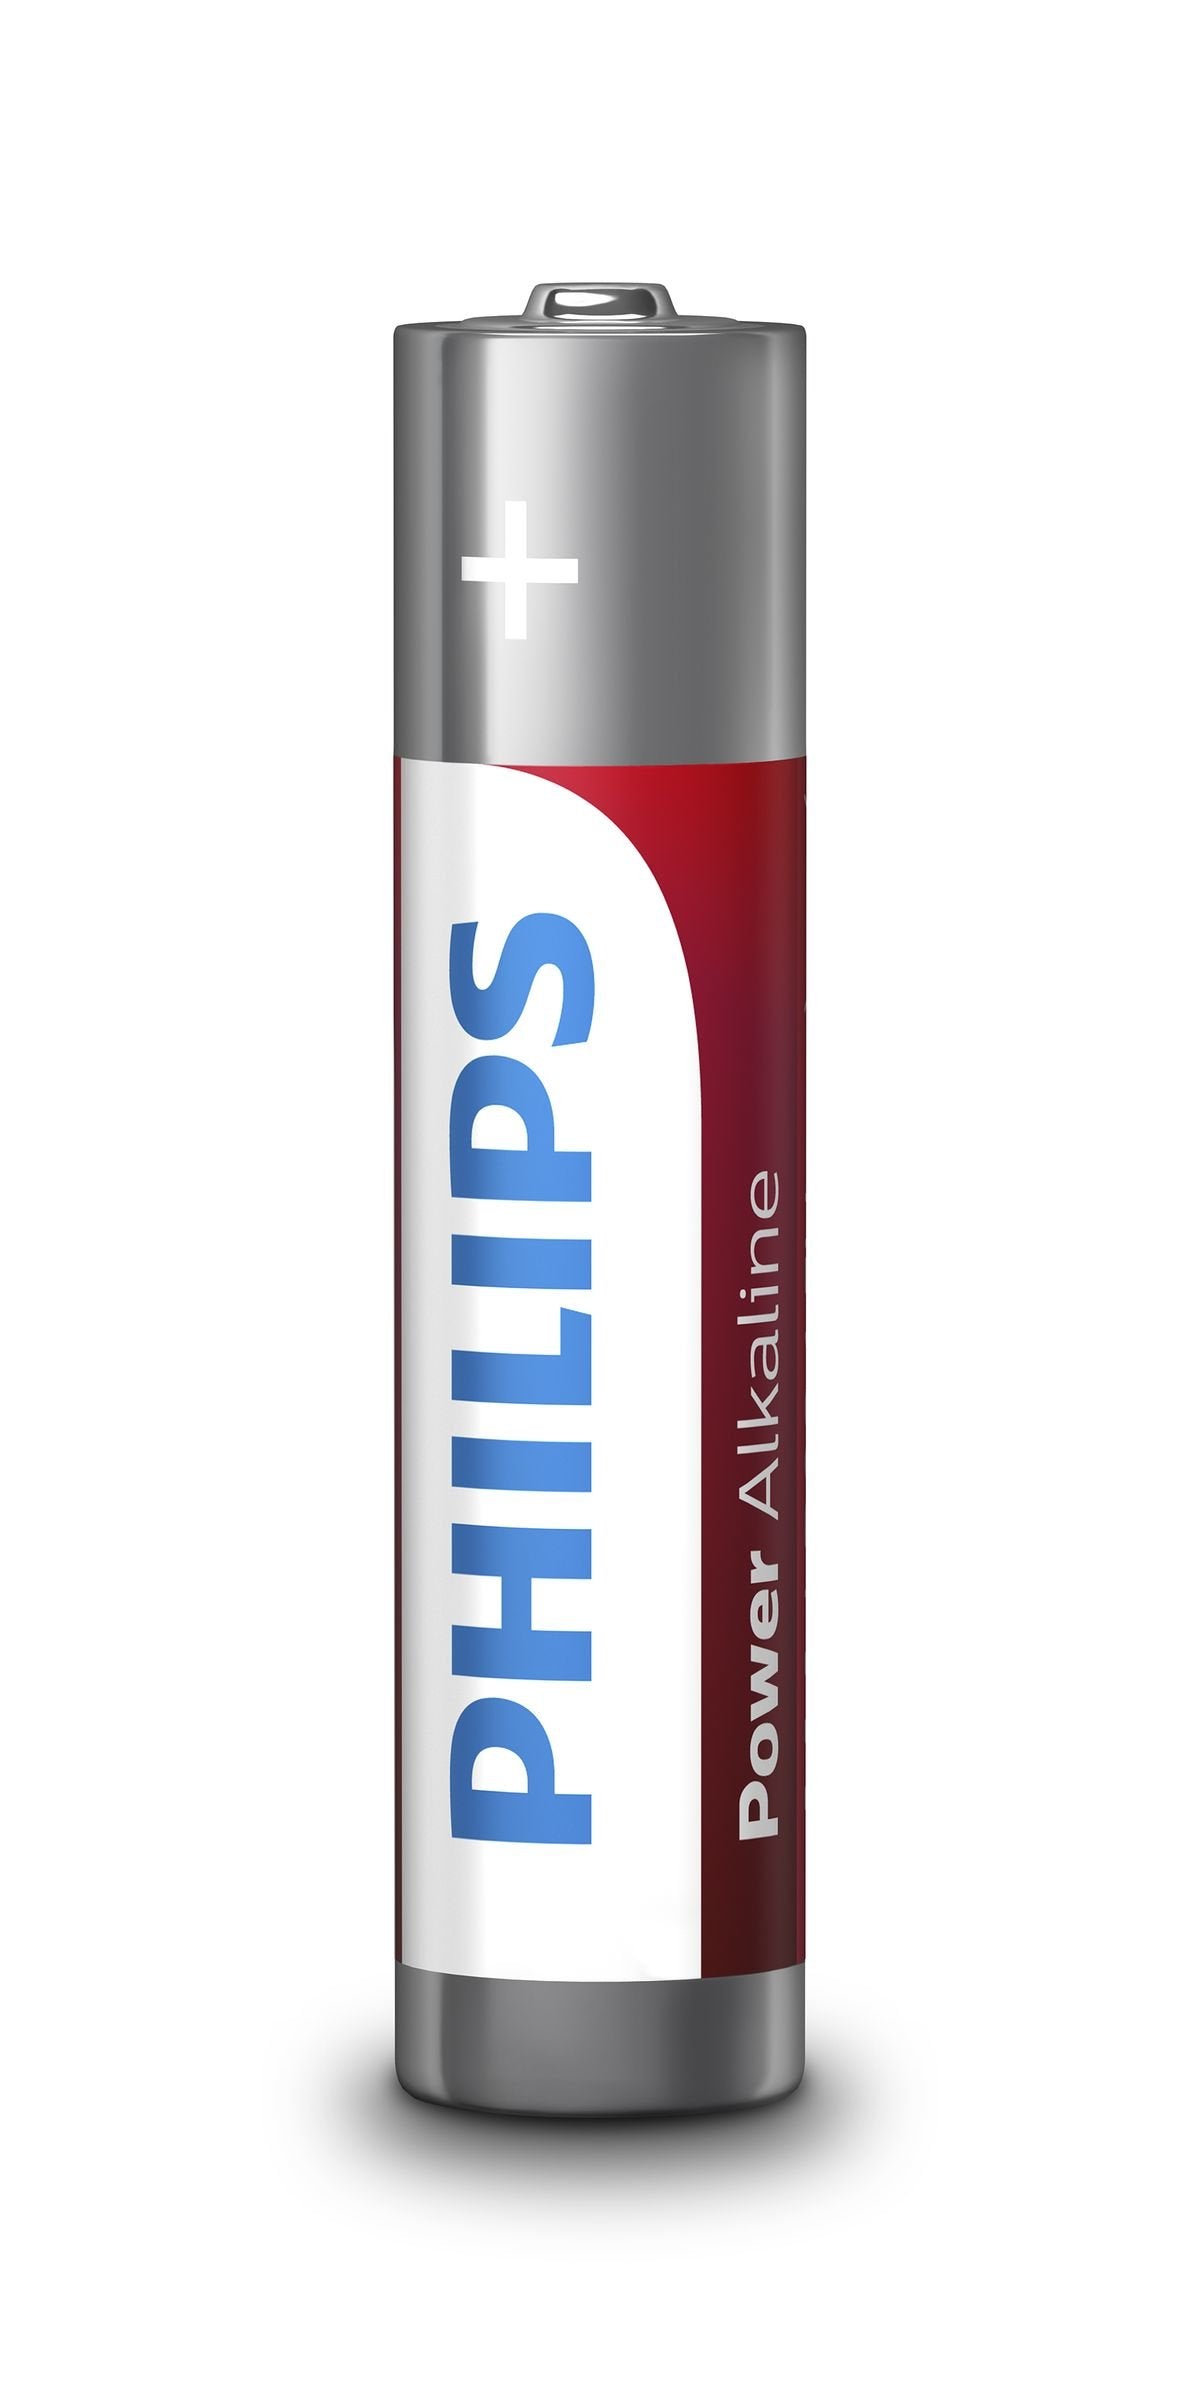 Philips LR03P12W/10 Power Alkaline AAA 12-stk Batteri